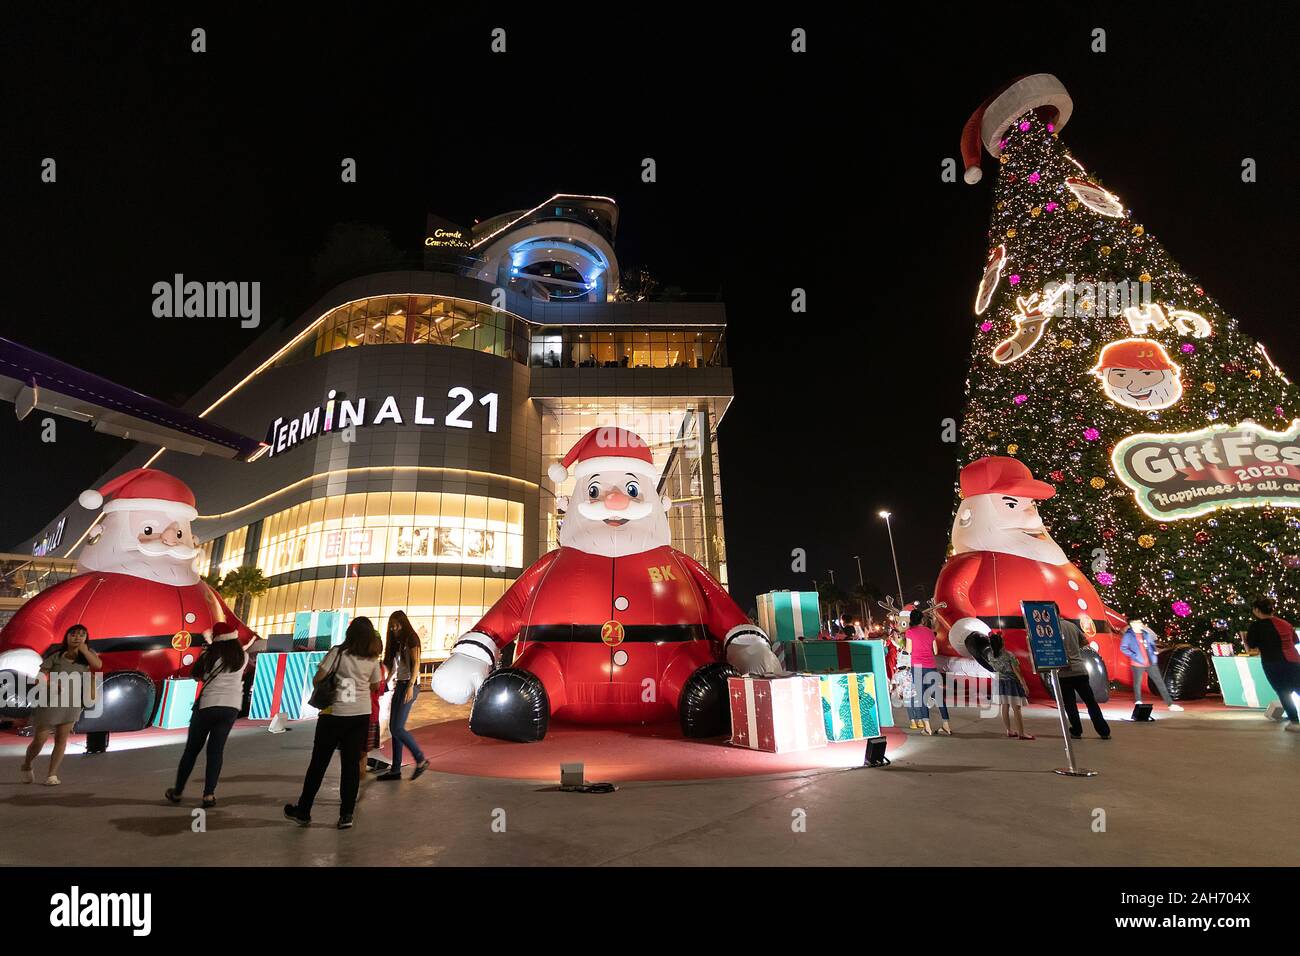 PATTAYA, Tailandia - 25 dicembre 2019: le persone godono di stagioni per il messaggio di saluto nella parte anteriore del terminale21 shopping center con grande Santa Claus doll Foto Stock